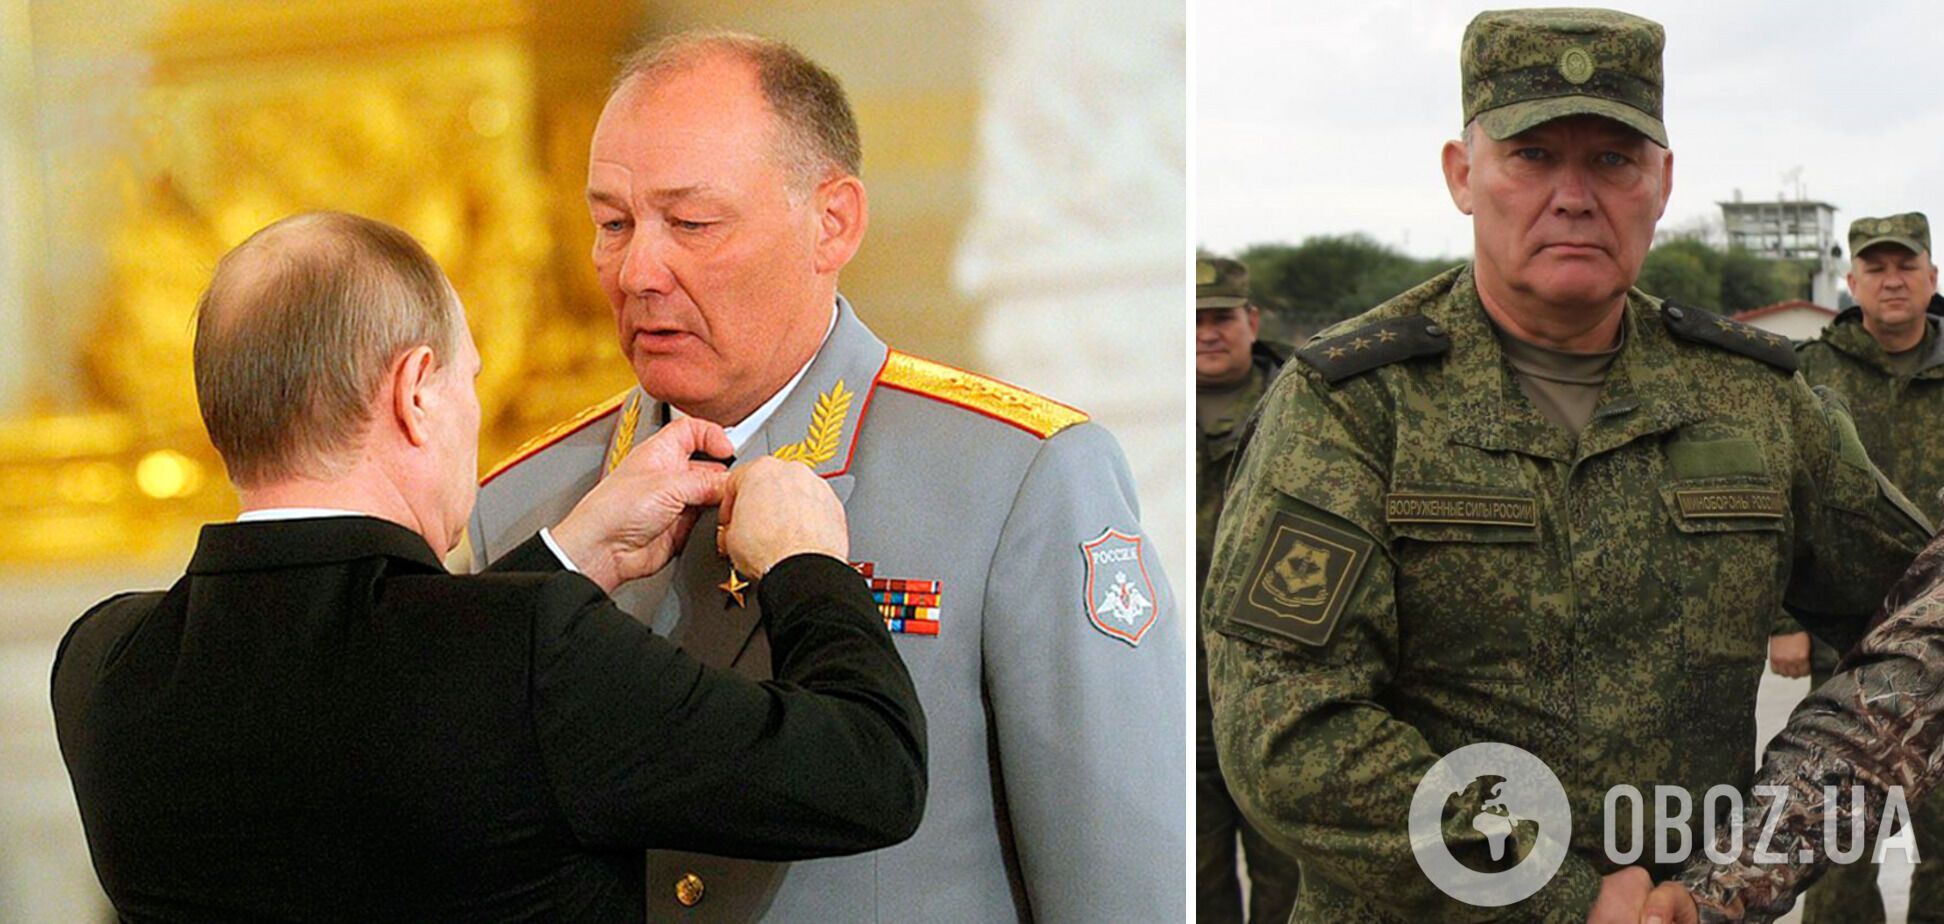 Командувач Південного військового округу Олександр Дворніков доповідав у Москву, що армія Путіна укомплектована "нормально"